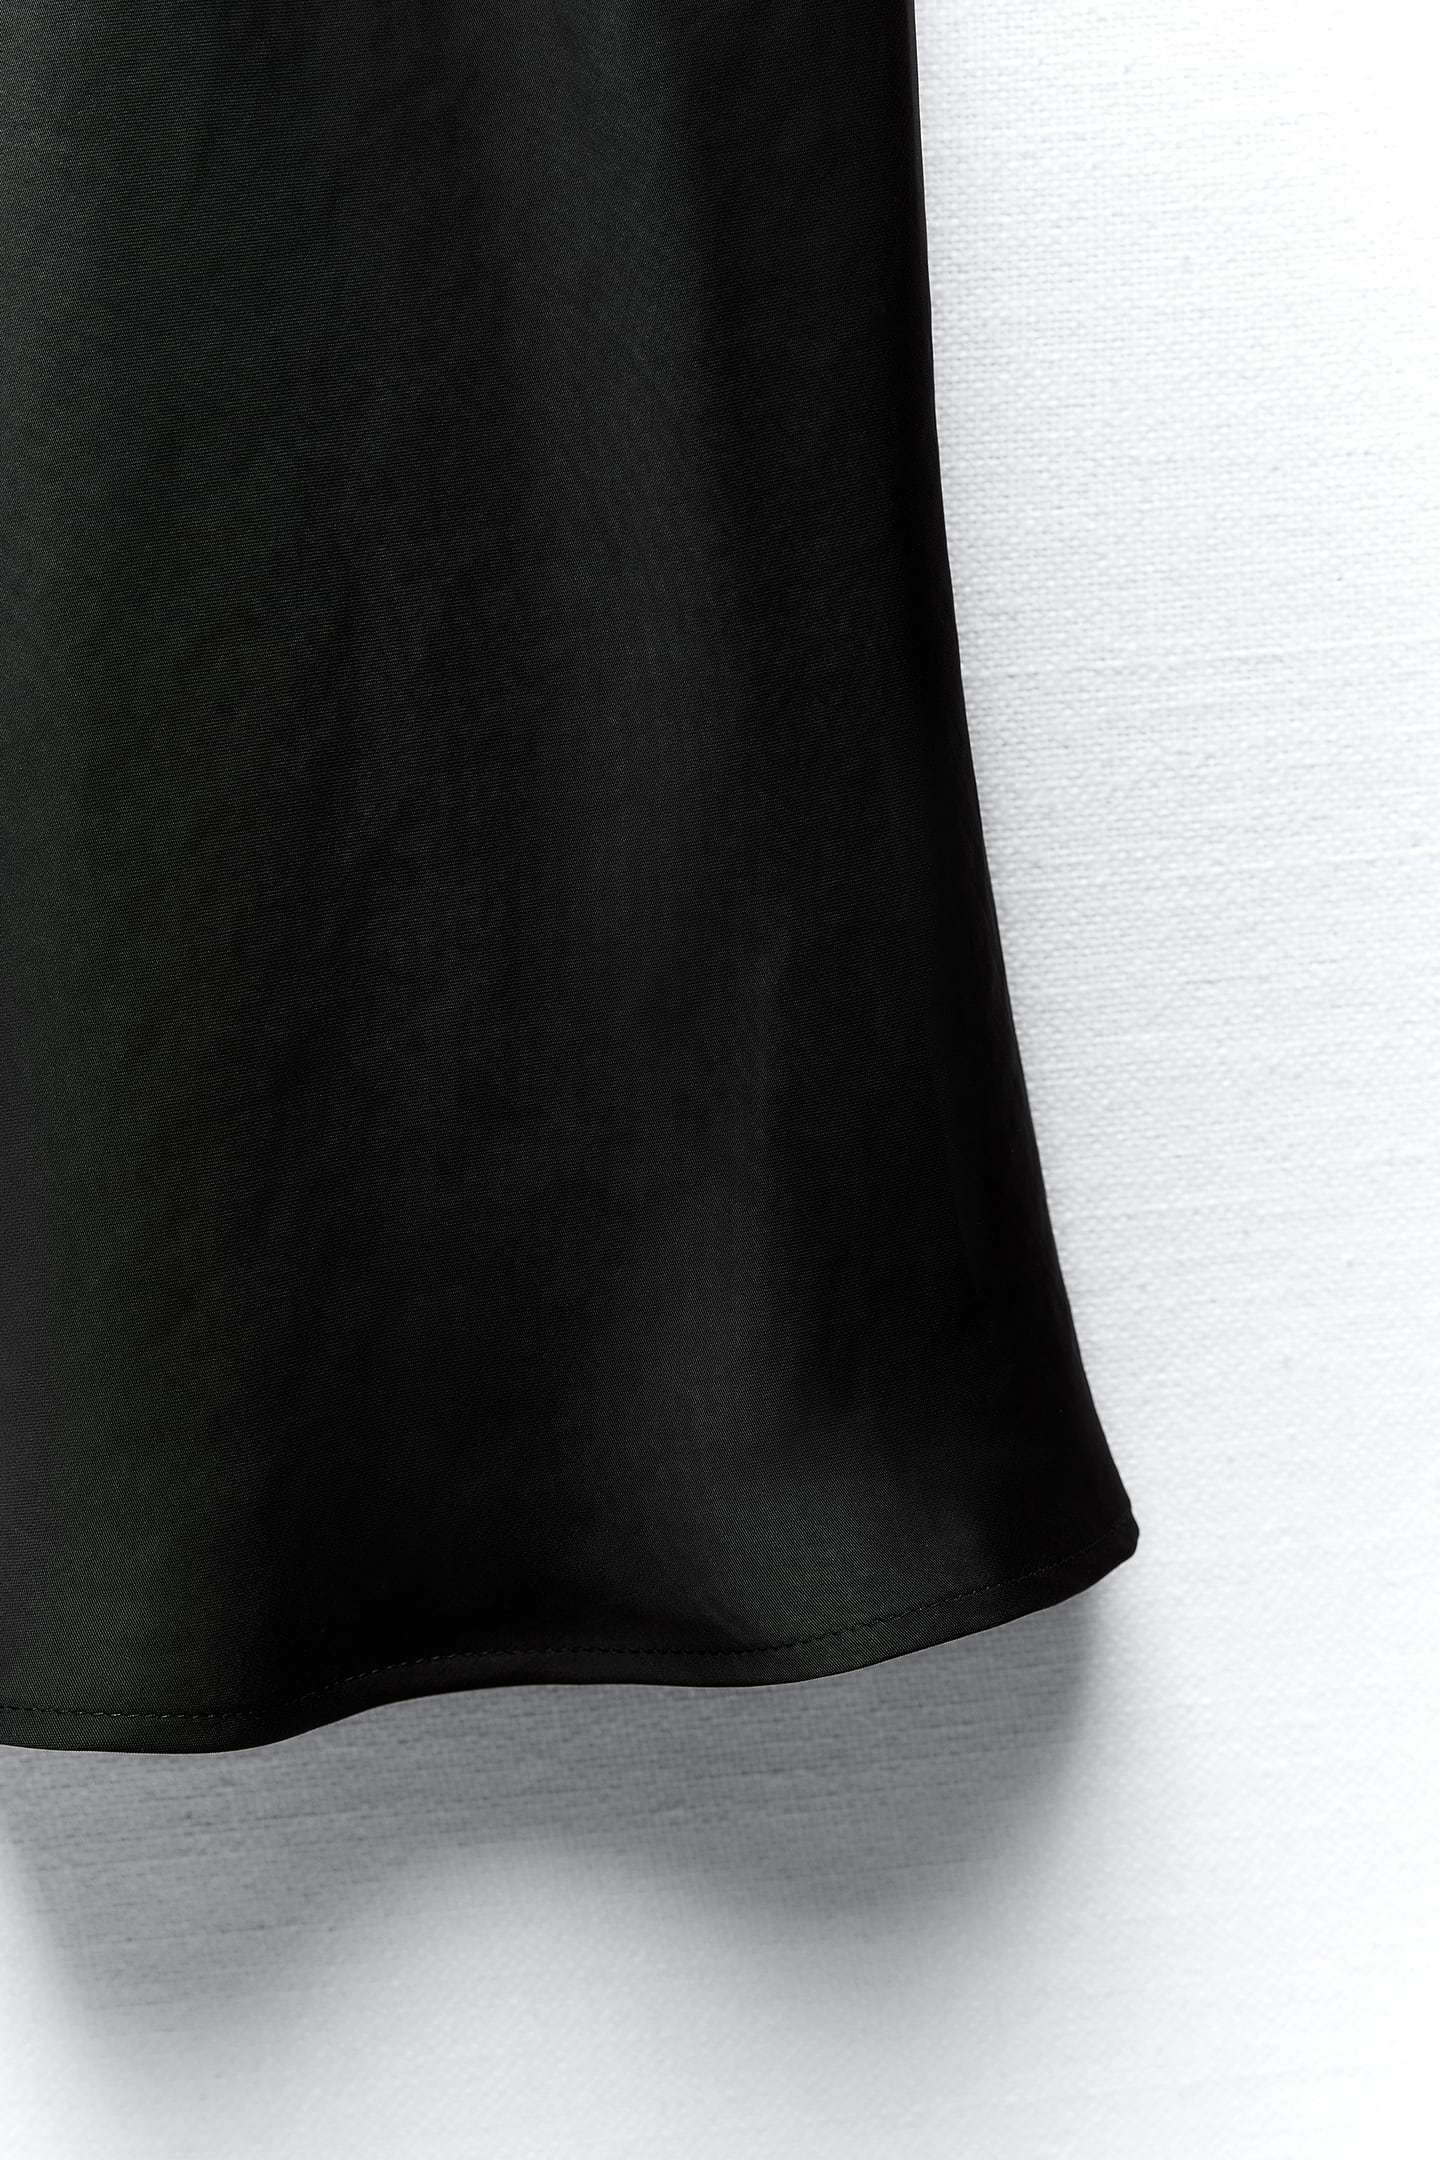 La falda negra satinada que te hará el look perfecto para Nochevieja